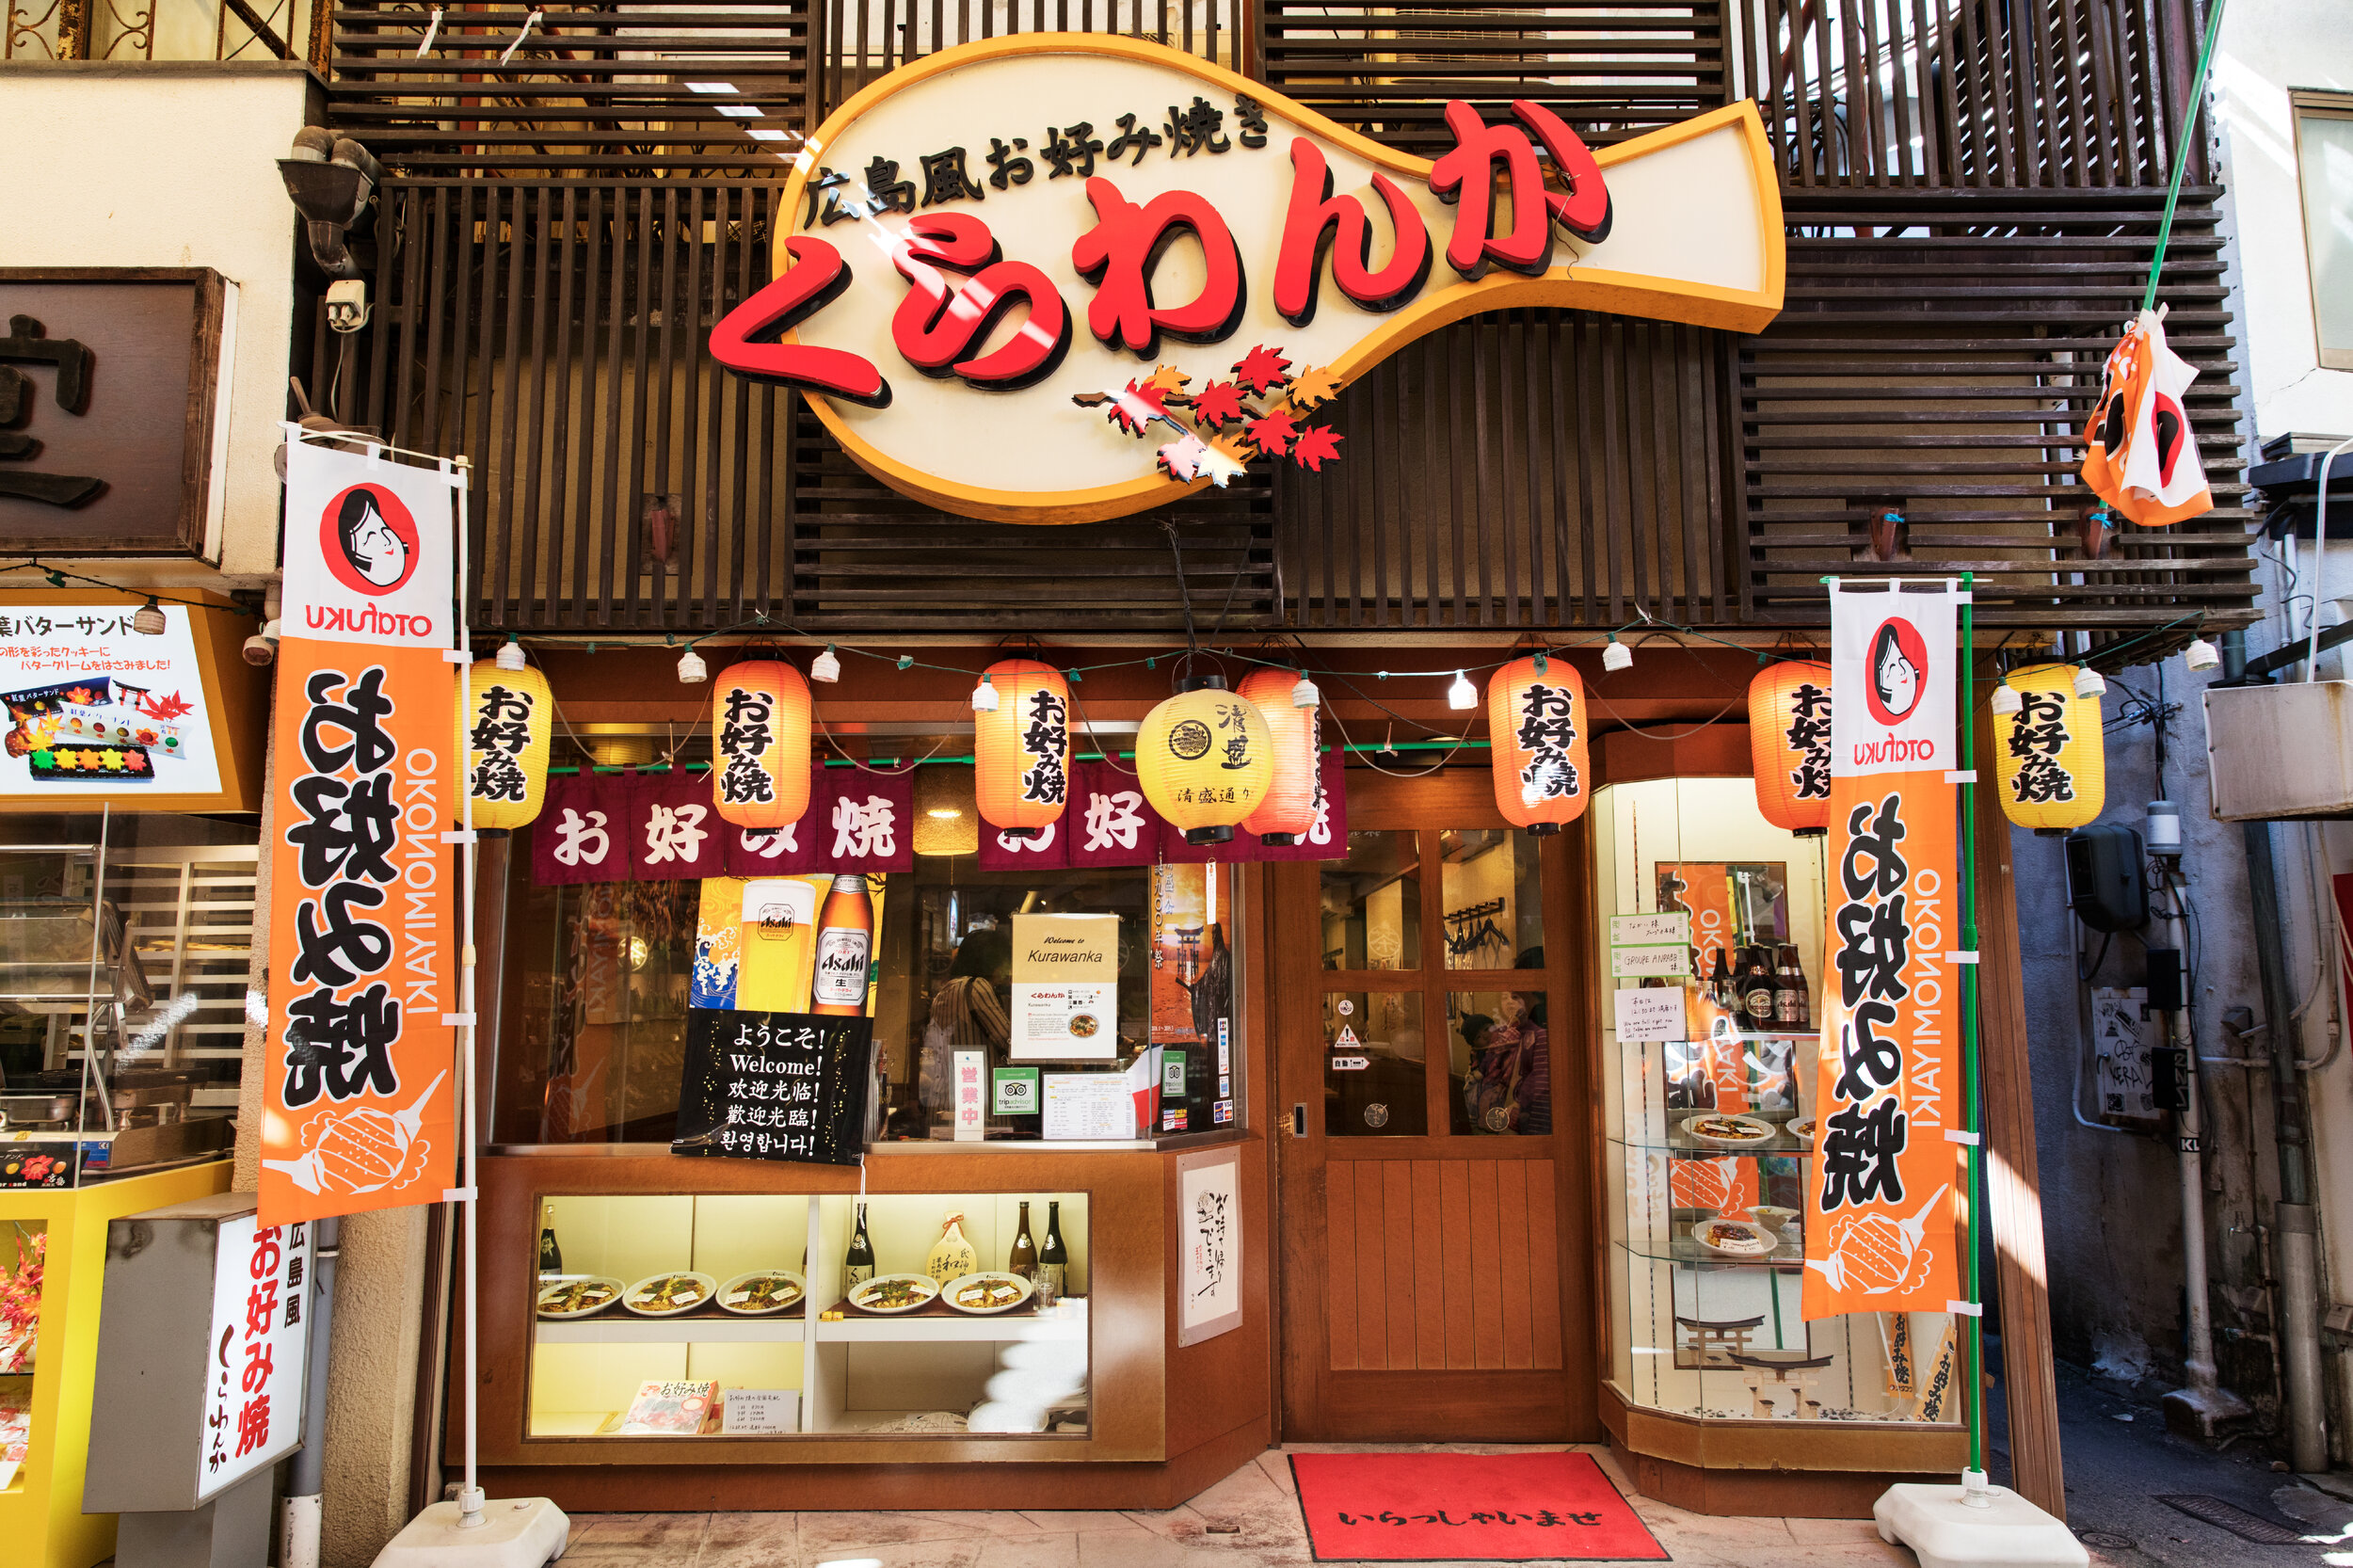 1020_5_Okonomiyaki restaurant (image)_Setouchi_ShokoPhoto©-5209.JPG